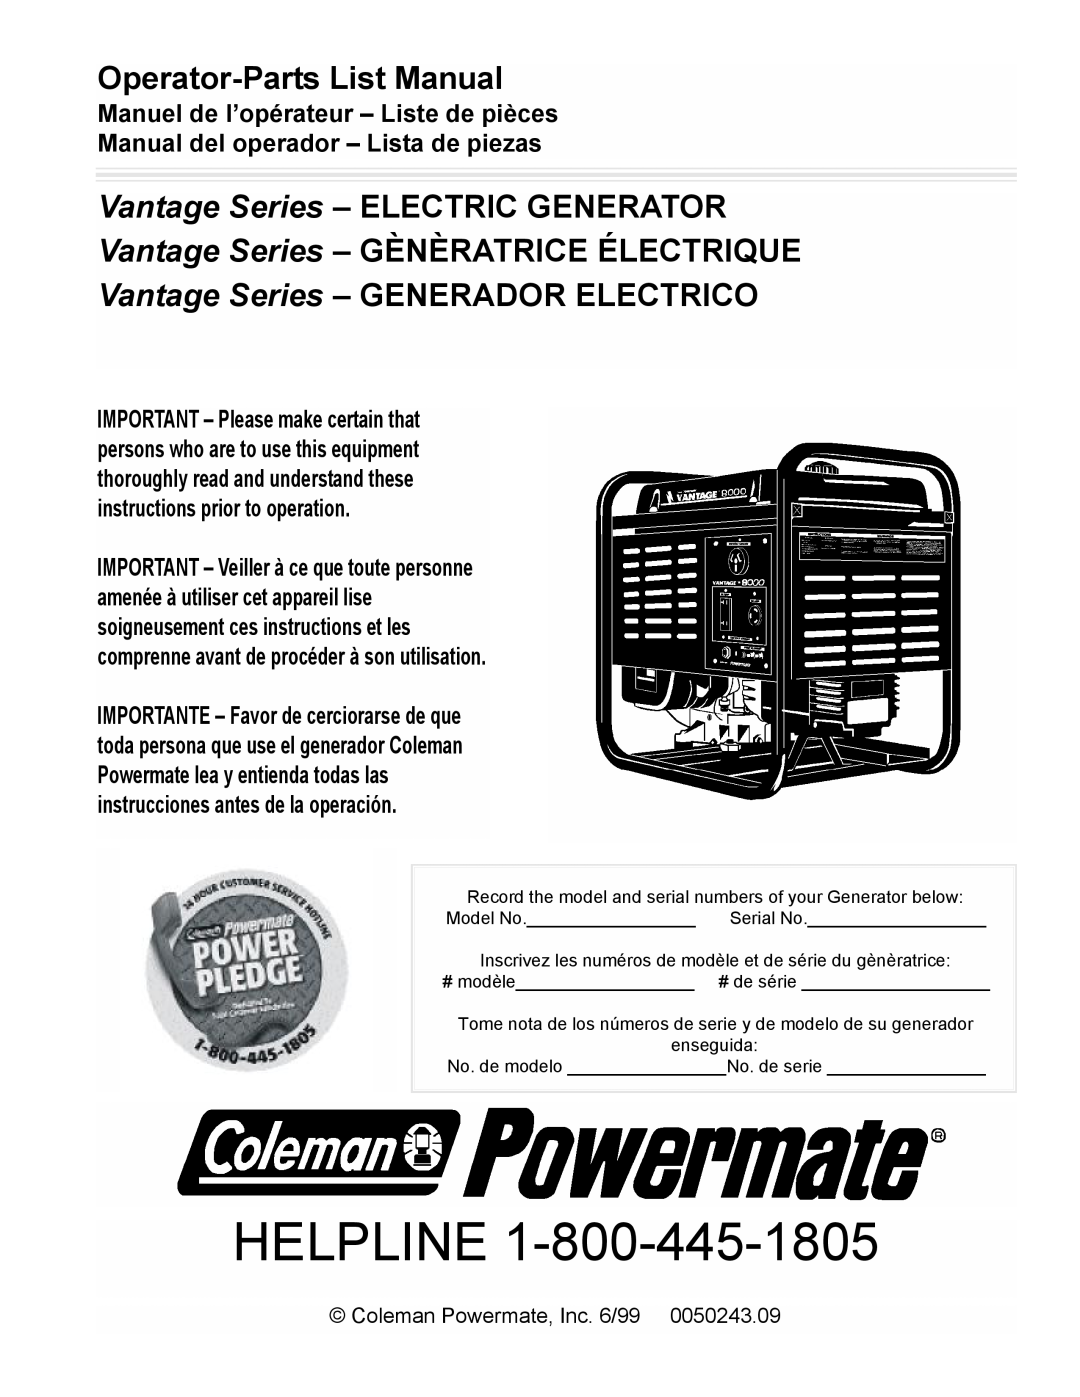 Powermate PM0478022 manual Operator-PartsList Manual, Vantage Series - ELECTRIC GENERATOR, Coleman Powermate, Inc. 6/99 